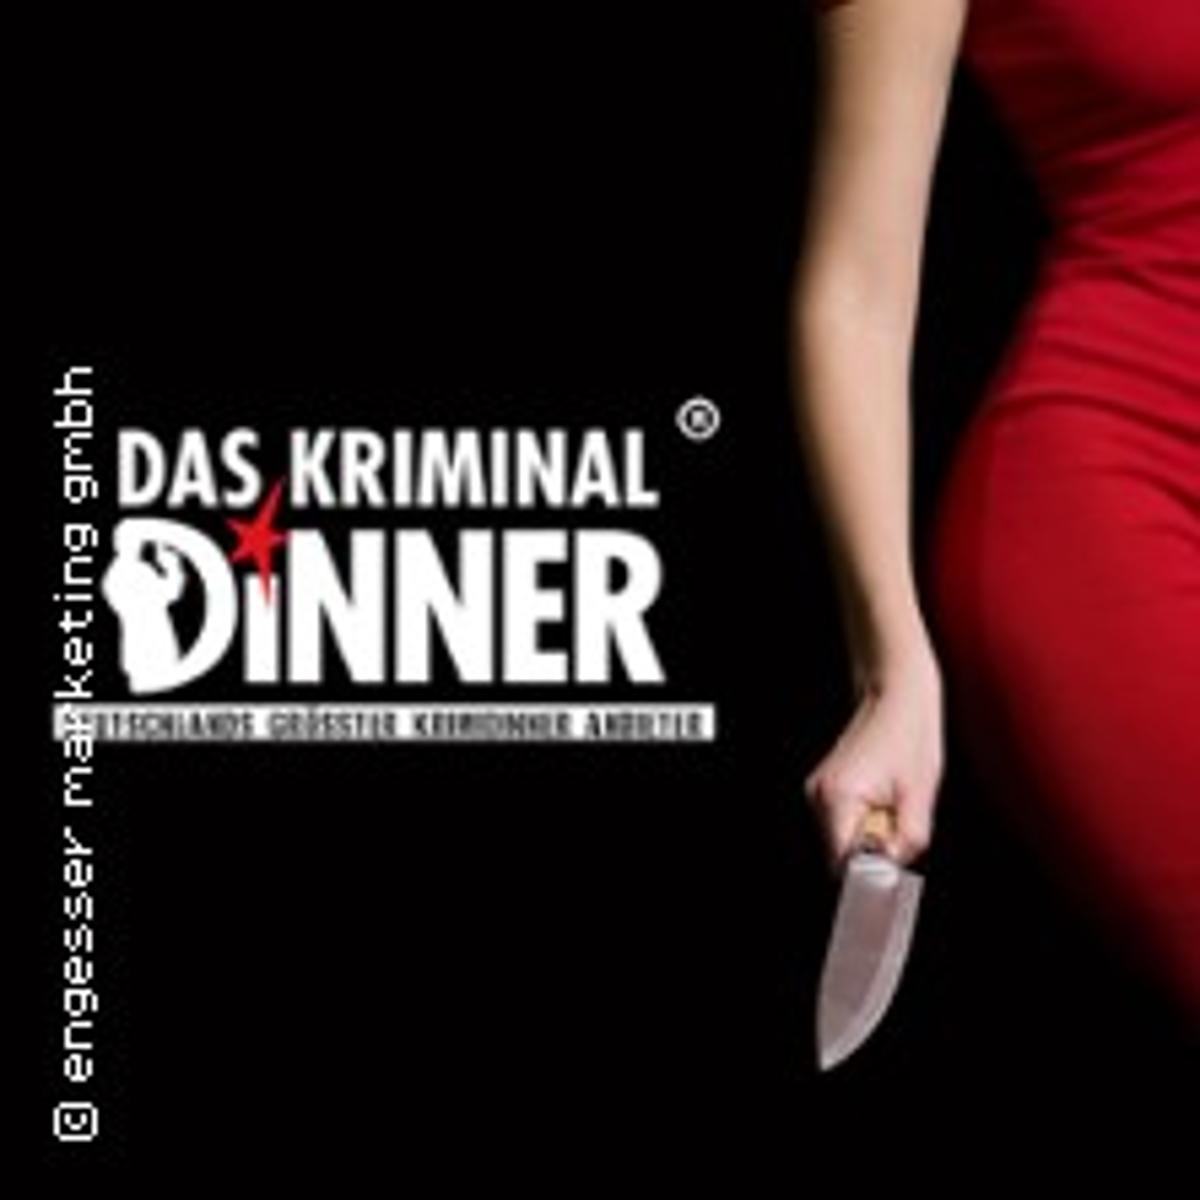 Eine Veranstaltung der Reihe Das Kriminal Dinner – Krimidinner Mord in der St. Pauli HaifischbarDas Kriminal Dinner – Krimidinner Mord in der St. Pauli Haifischbar